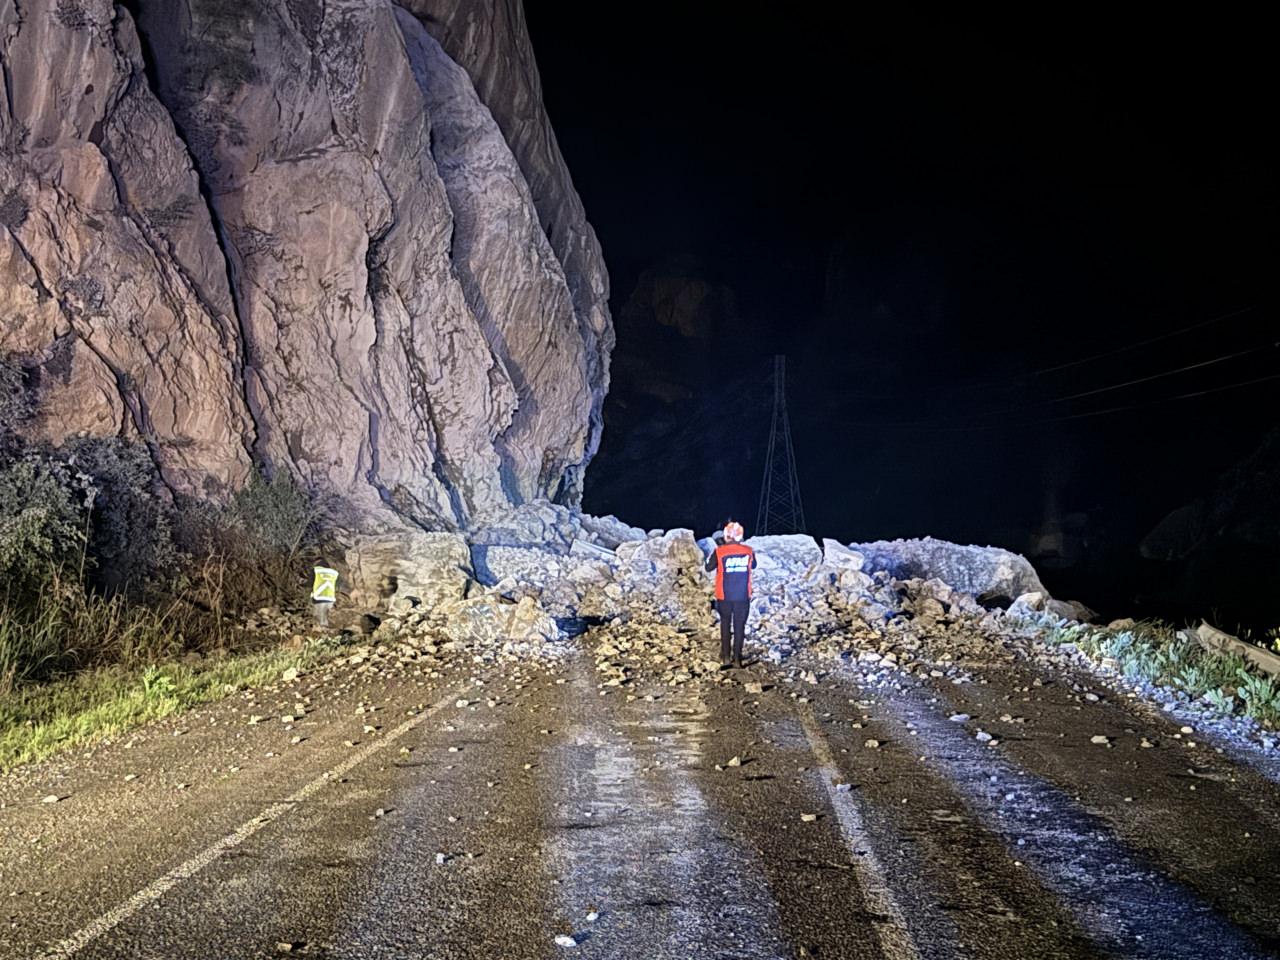 Hakkari-Çukurca kara yolu dağdan düşen kaya parçaları nedeniyle kapandı